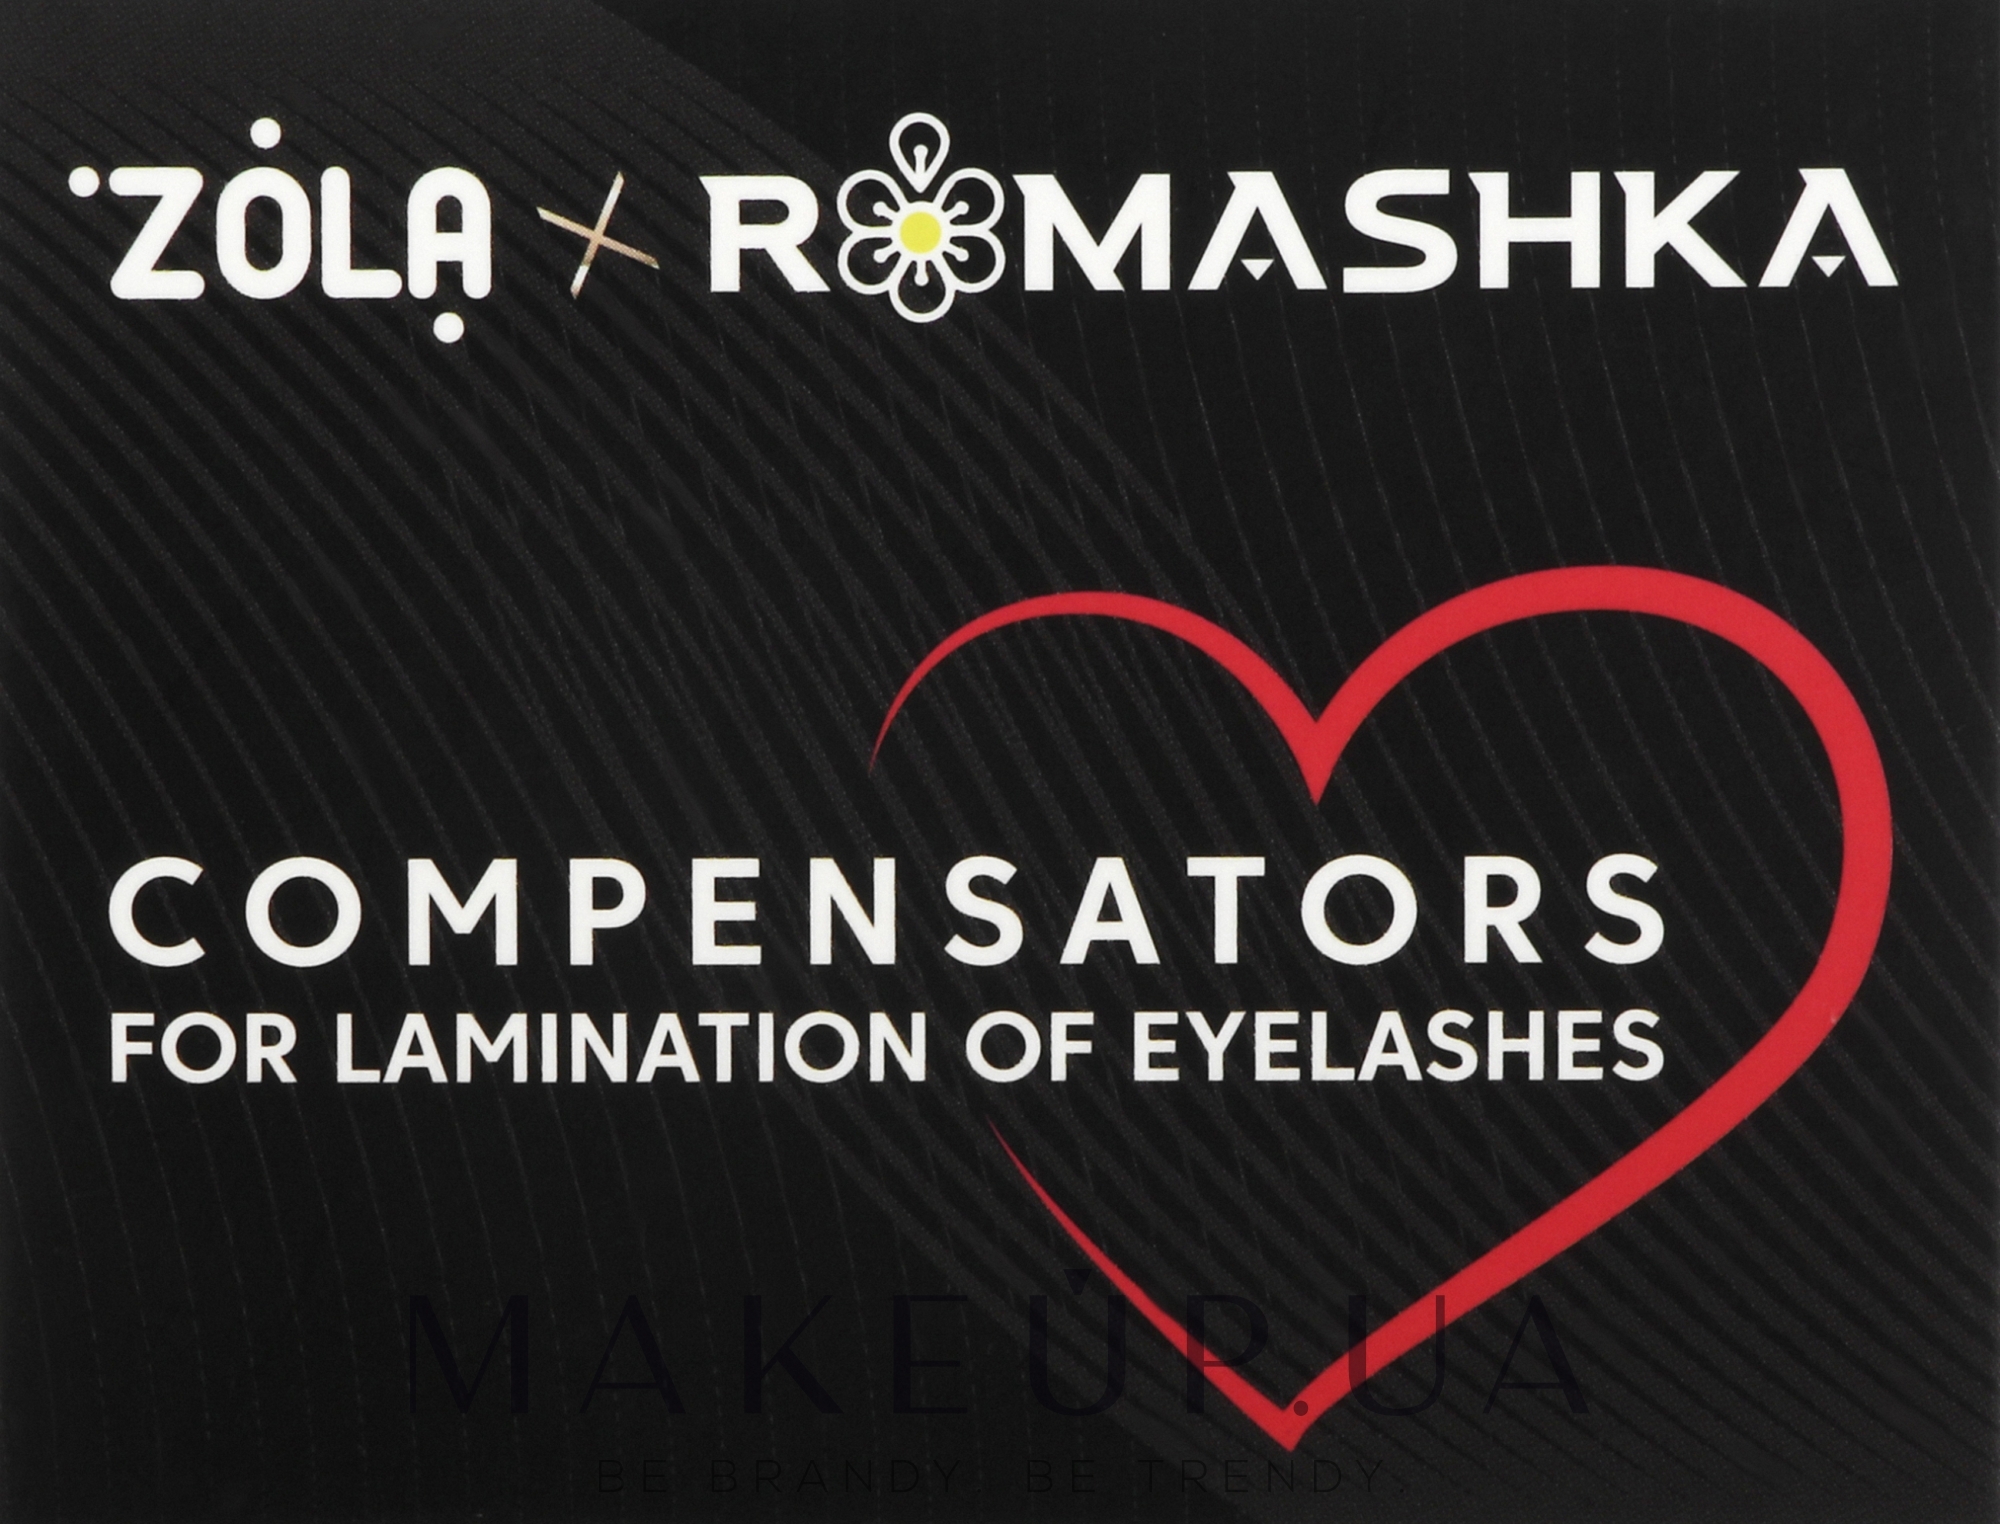 Компенсаторы для ламинирования ресниц, черные - Zola x Romashka Compensators For Lamination Of Eyelashes — фото 2шт